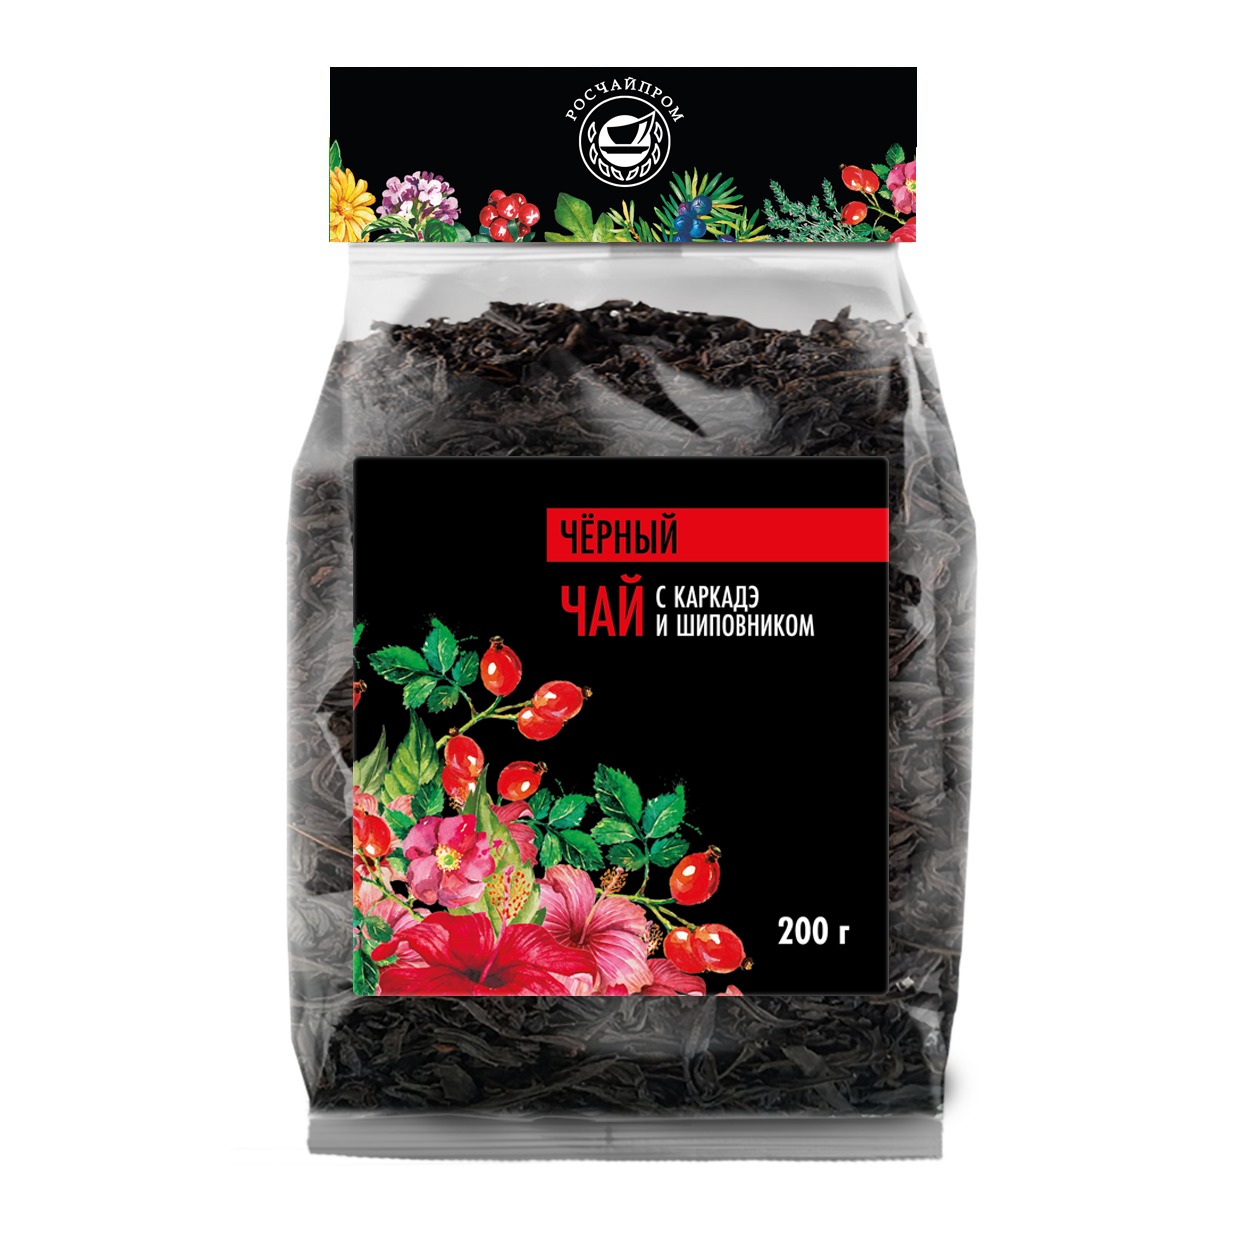 Клубника шиповник | Чай черный с каркаде, цветами и ягодами, листовой